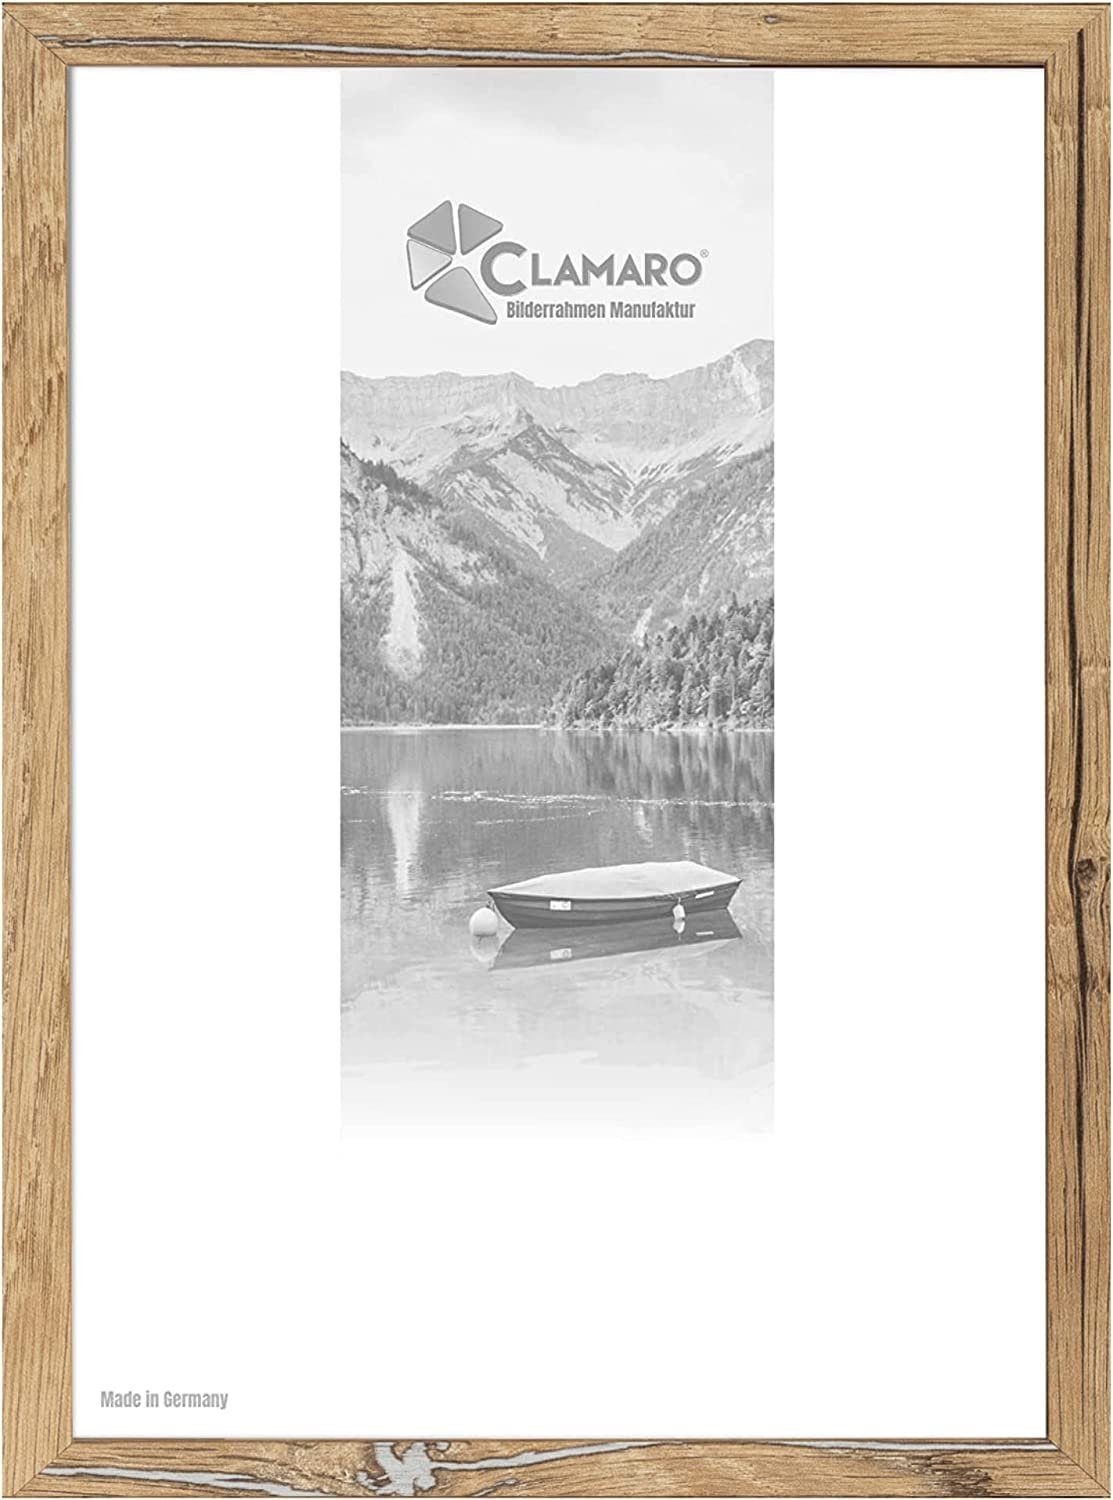 Clamaro Bilderrahmen Bilderrahmen Eiche Altholz CLAMARO Collage nach Maß FSC® Holz Modern eckig M3016 21x30 in Eiche Altholz